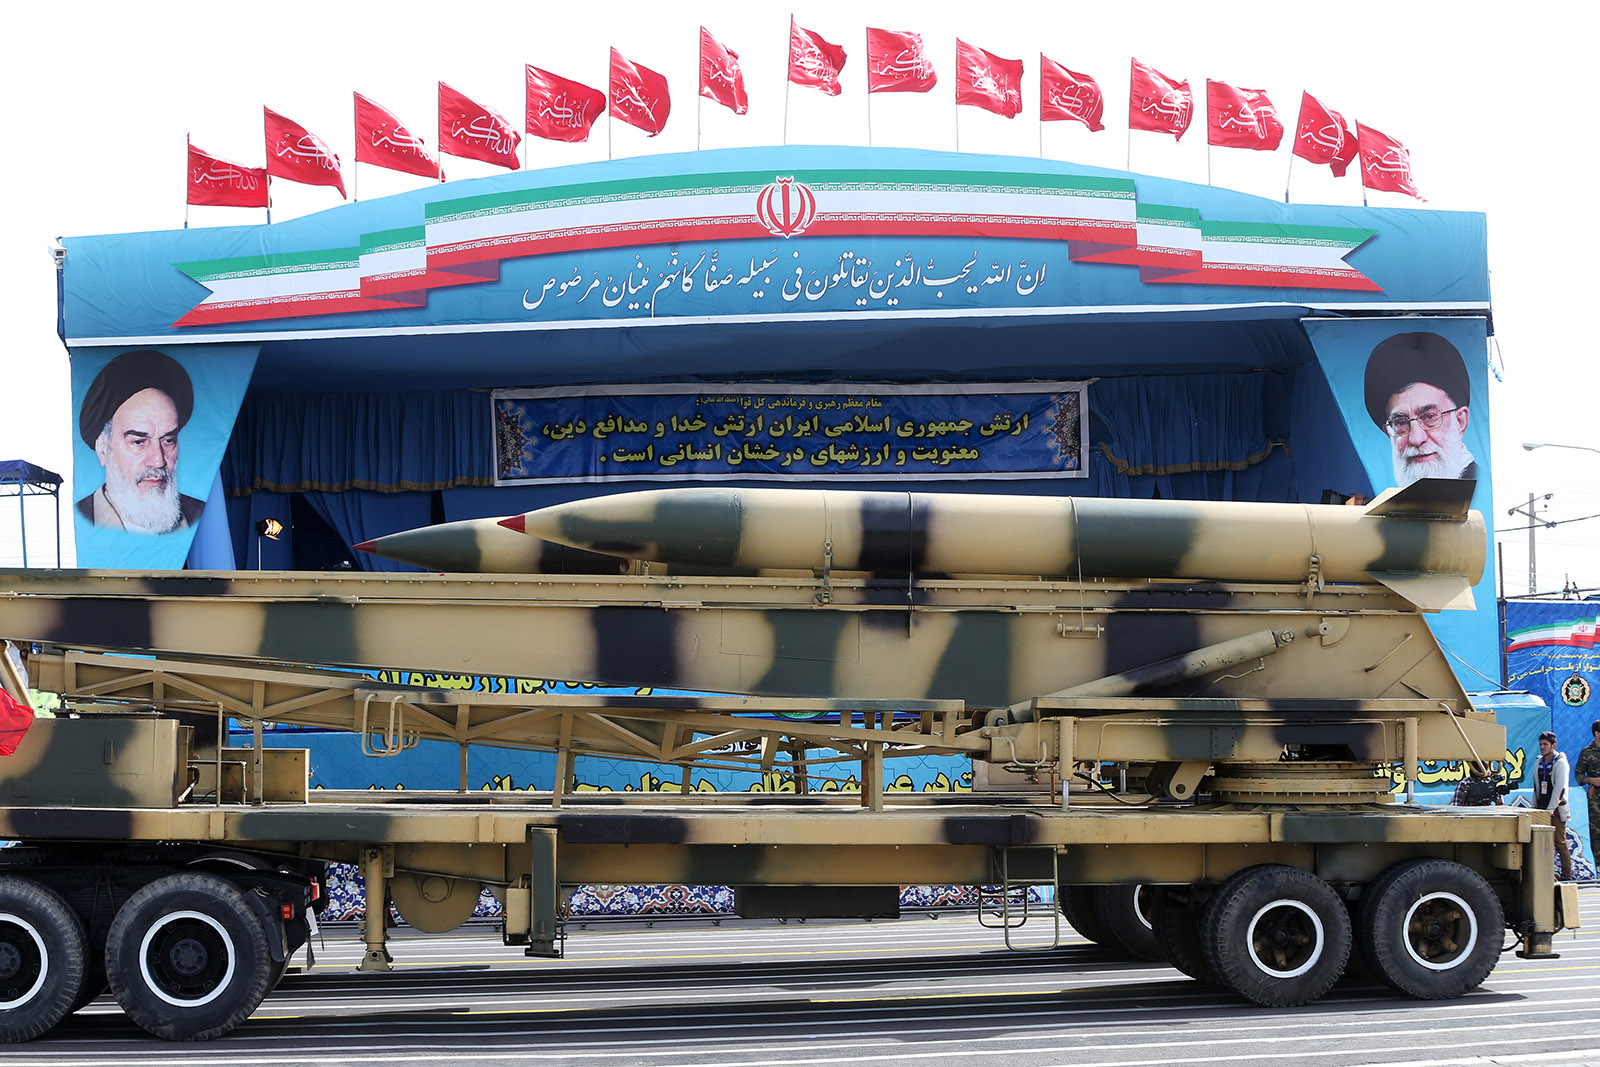 טילים מוצגים בתהלוכה צבאית באיראן. אפריל 2015 (צילום: AP Photo/Ebrahim Noroozi)